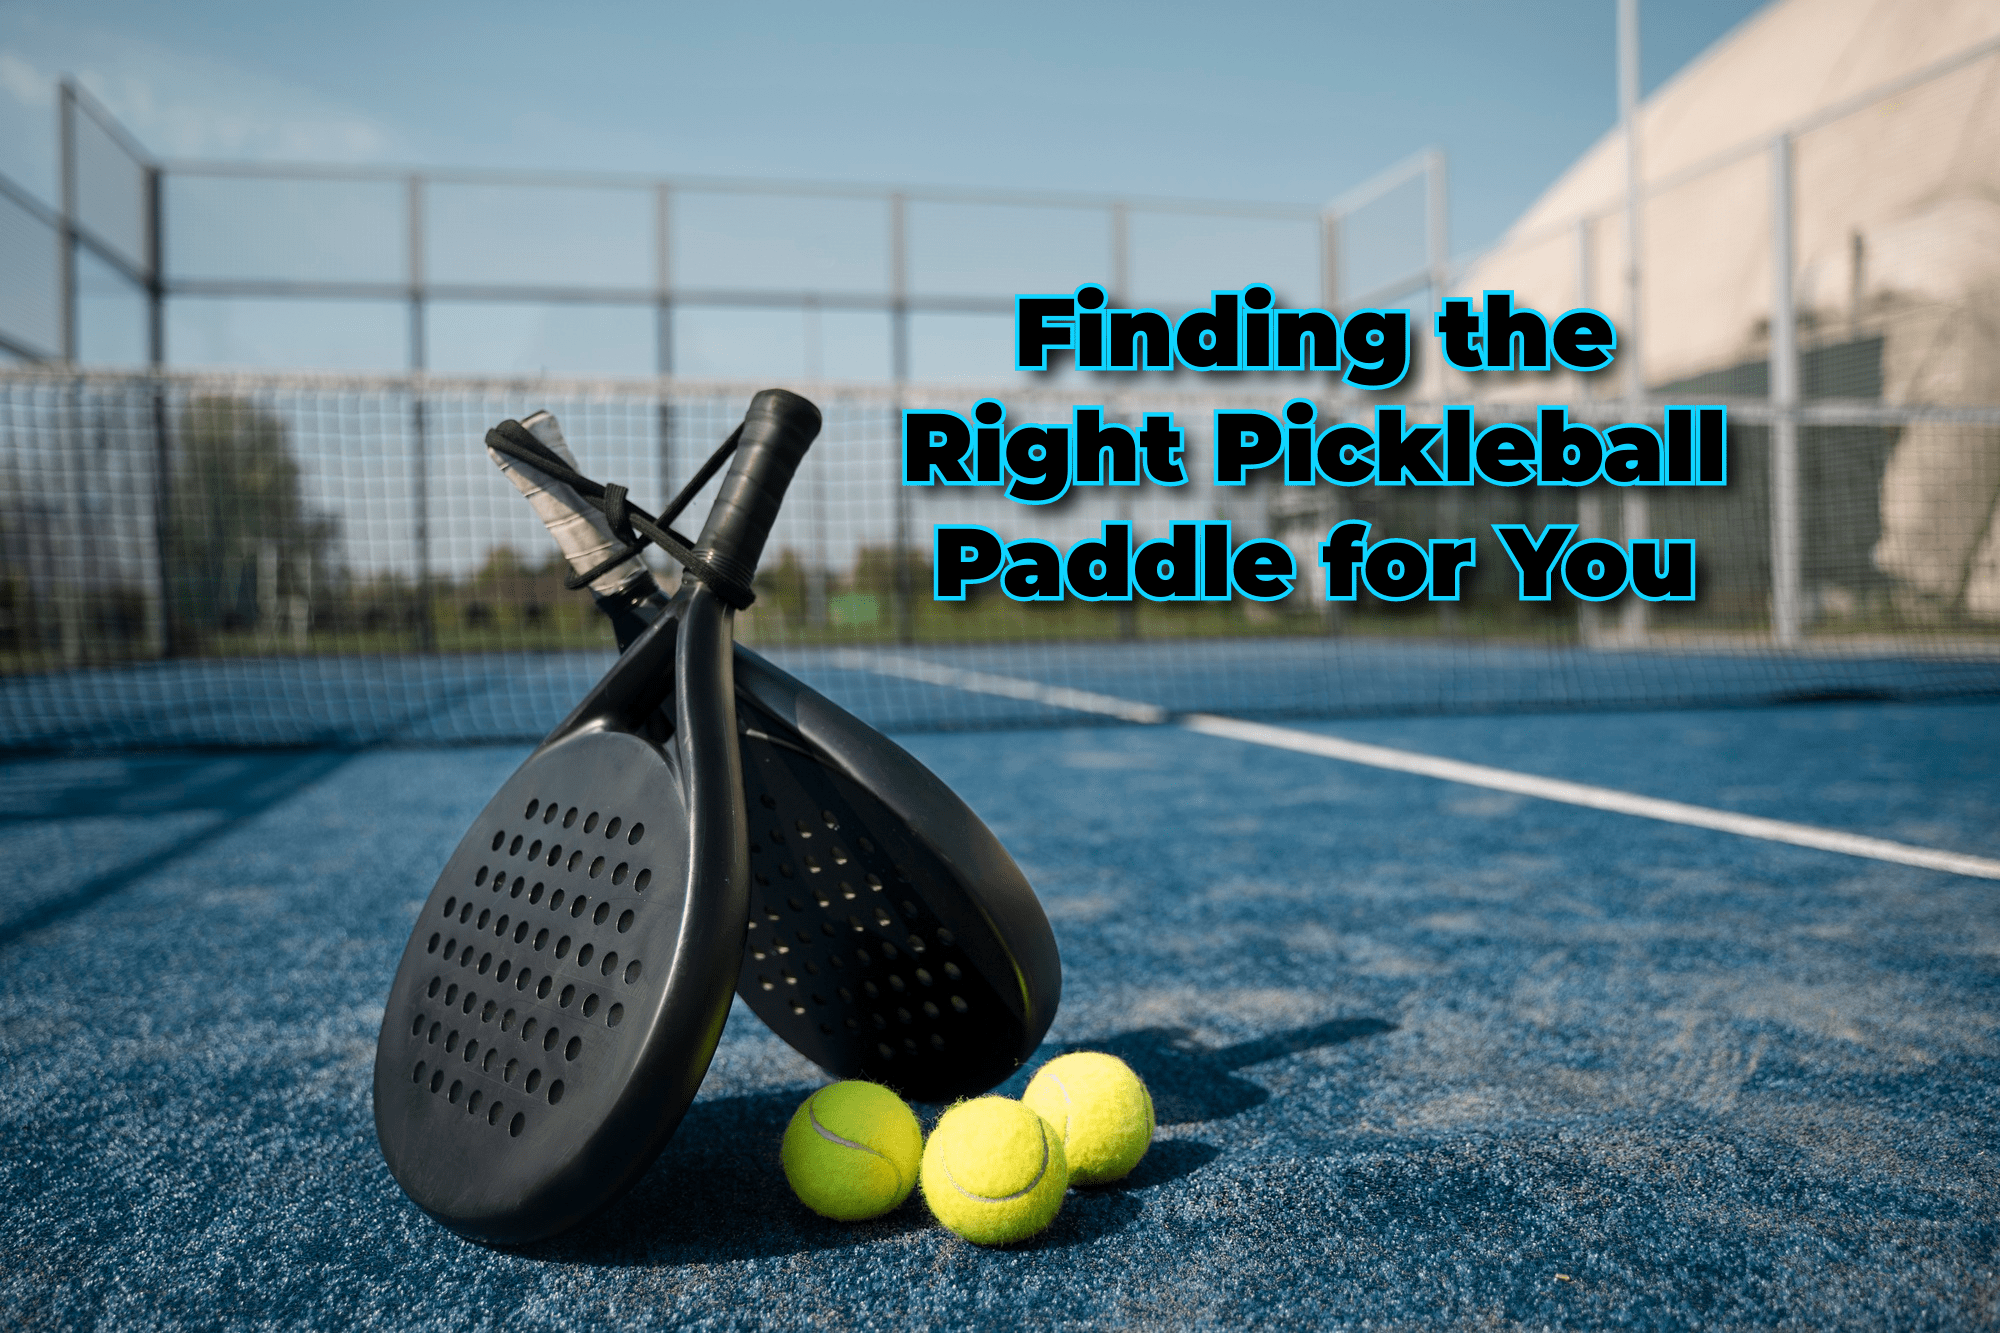 pickleball paddles